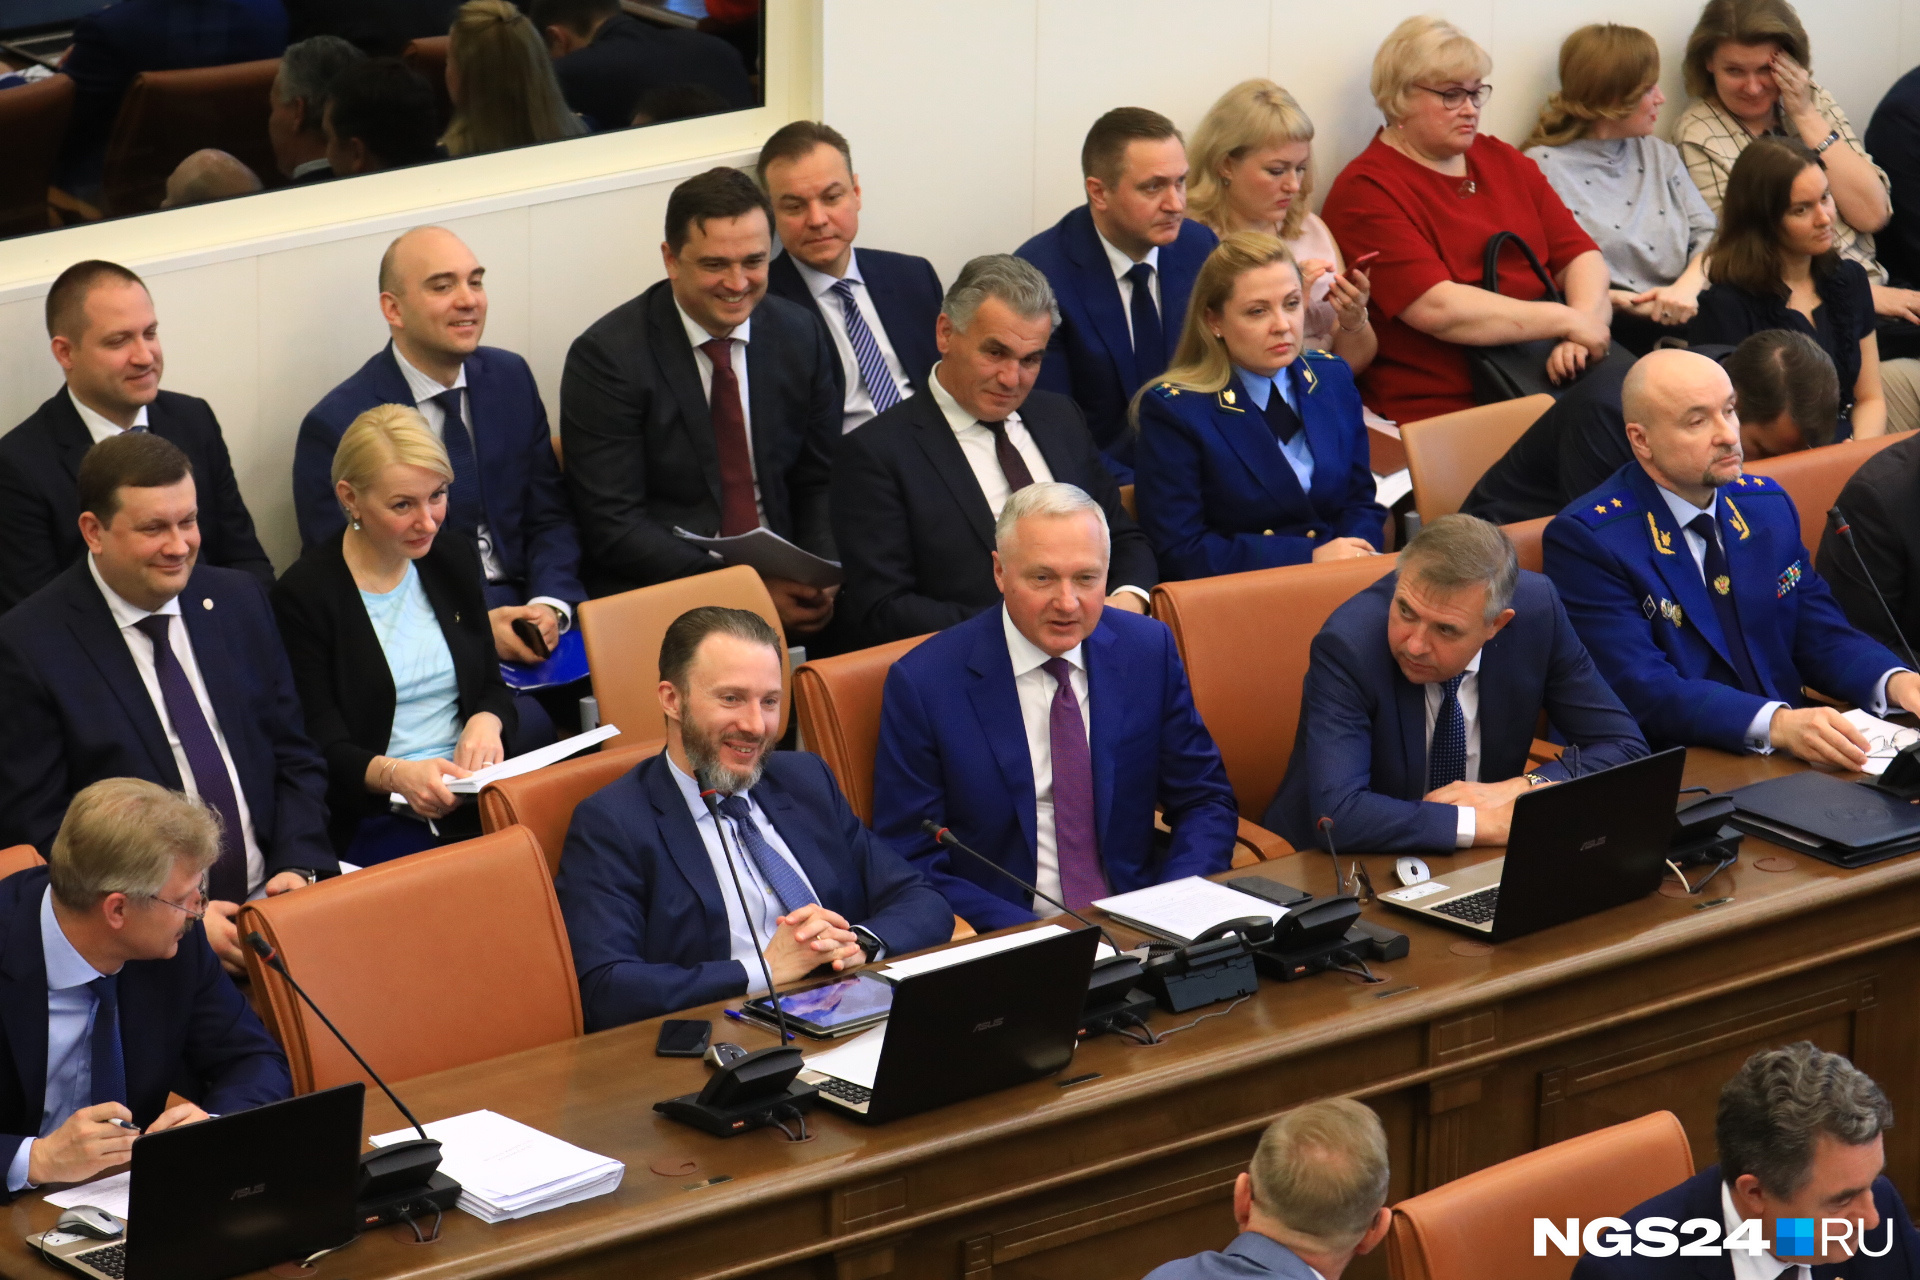 Заместитель губернатора  Сергей Пономаренко (второй слева в первом ряду) сделал несколько сенсационных заявлений 